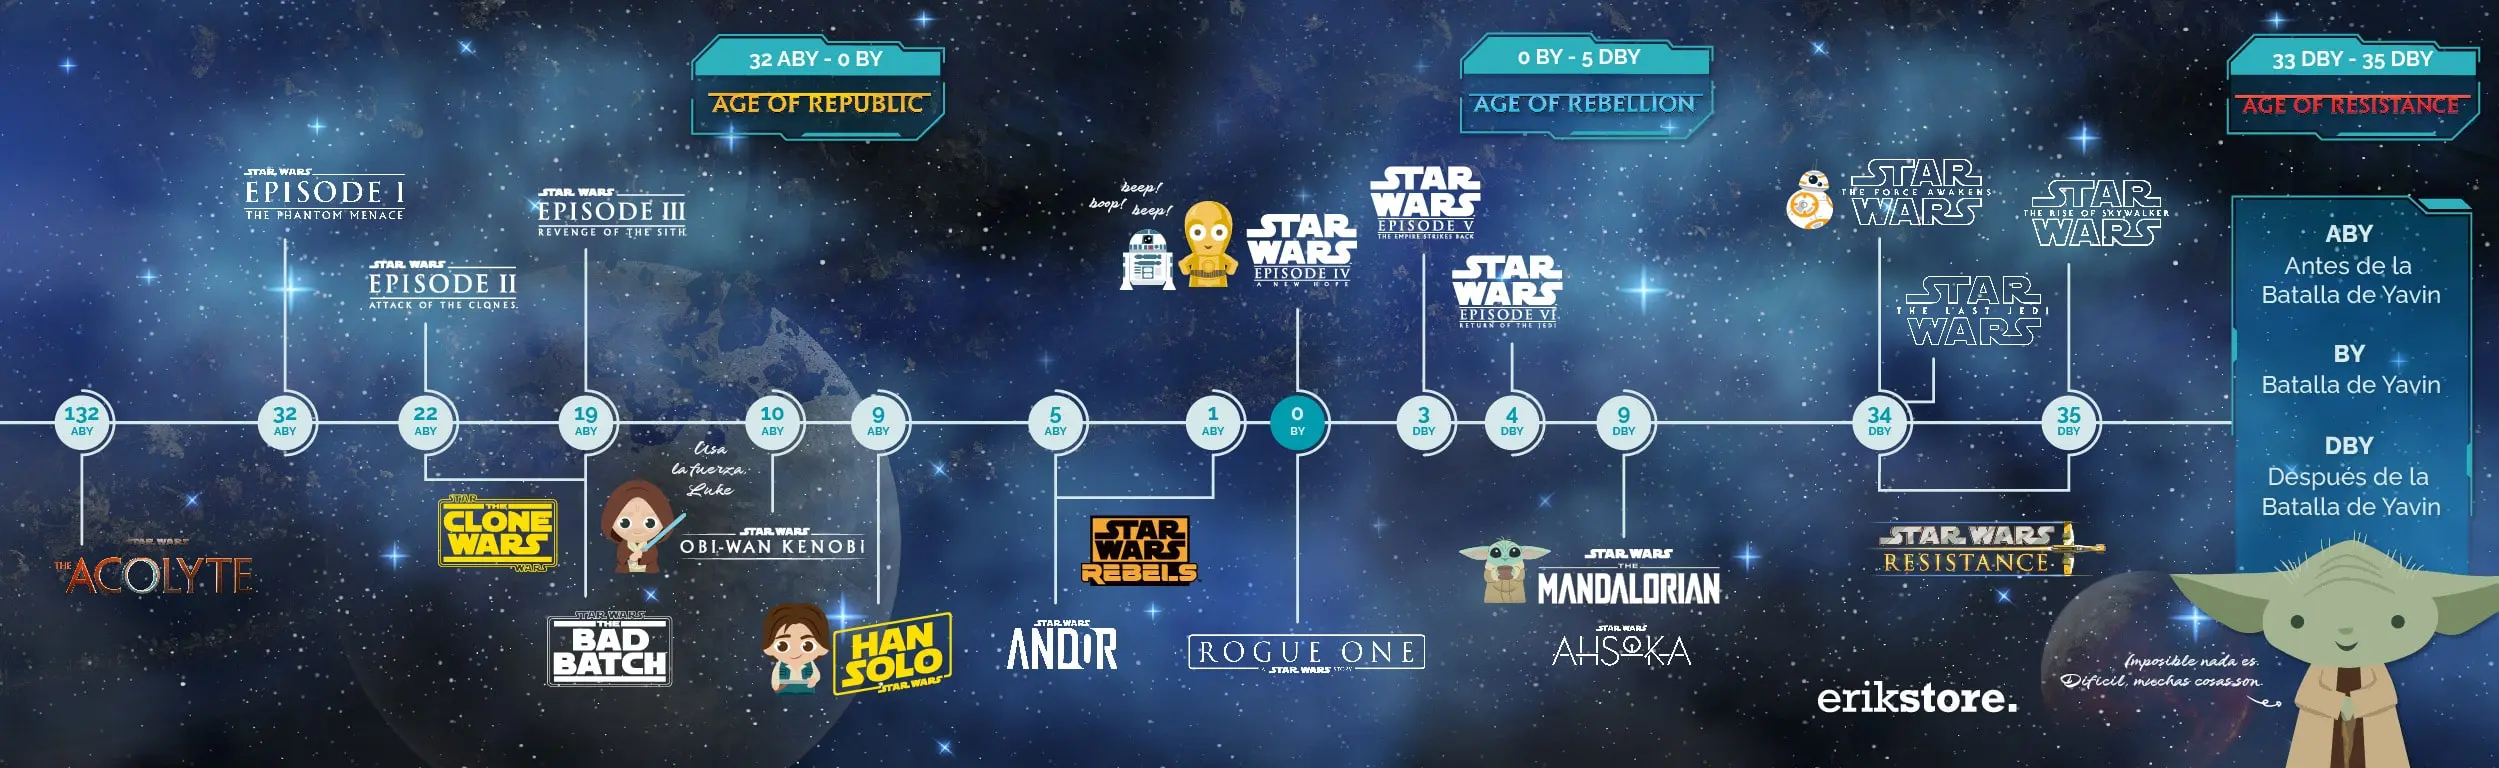 Cronología Star Wars